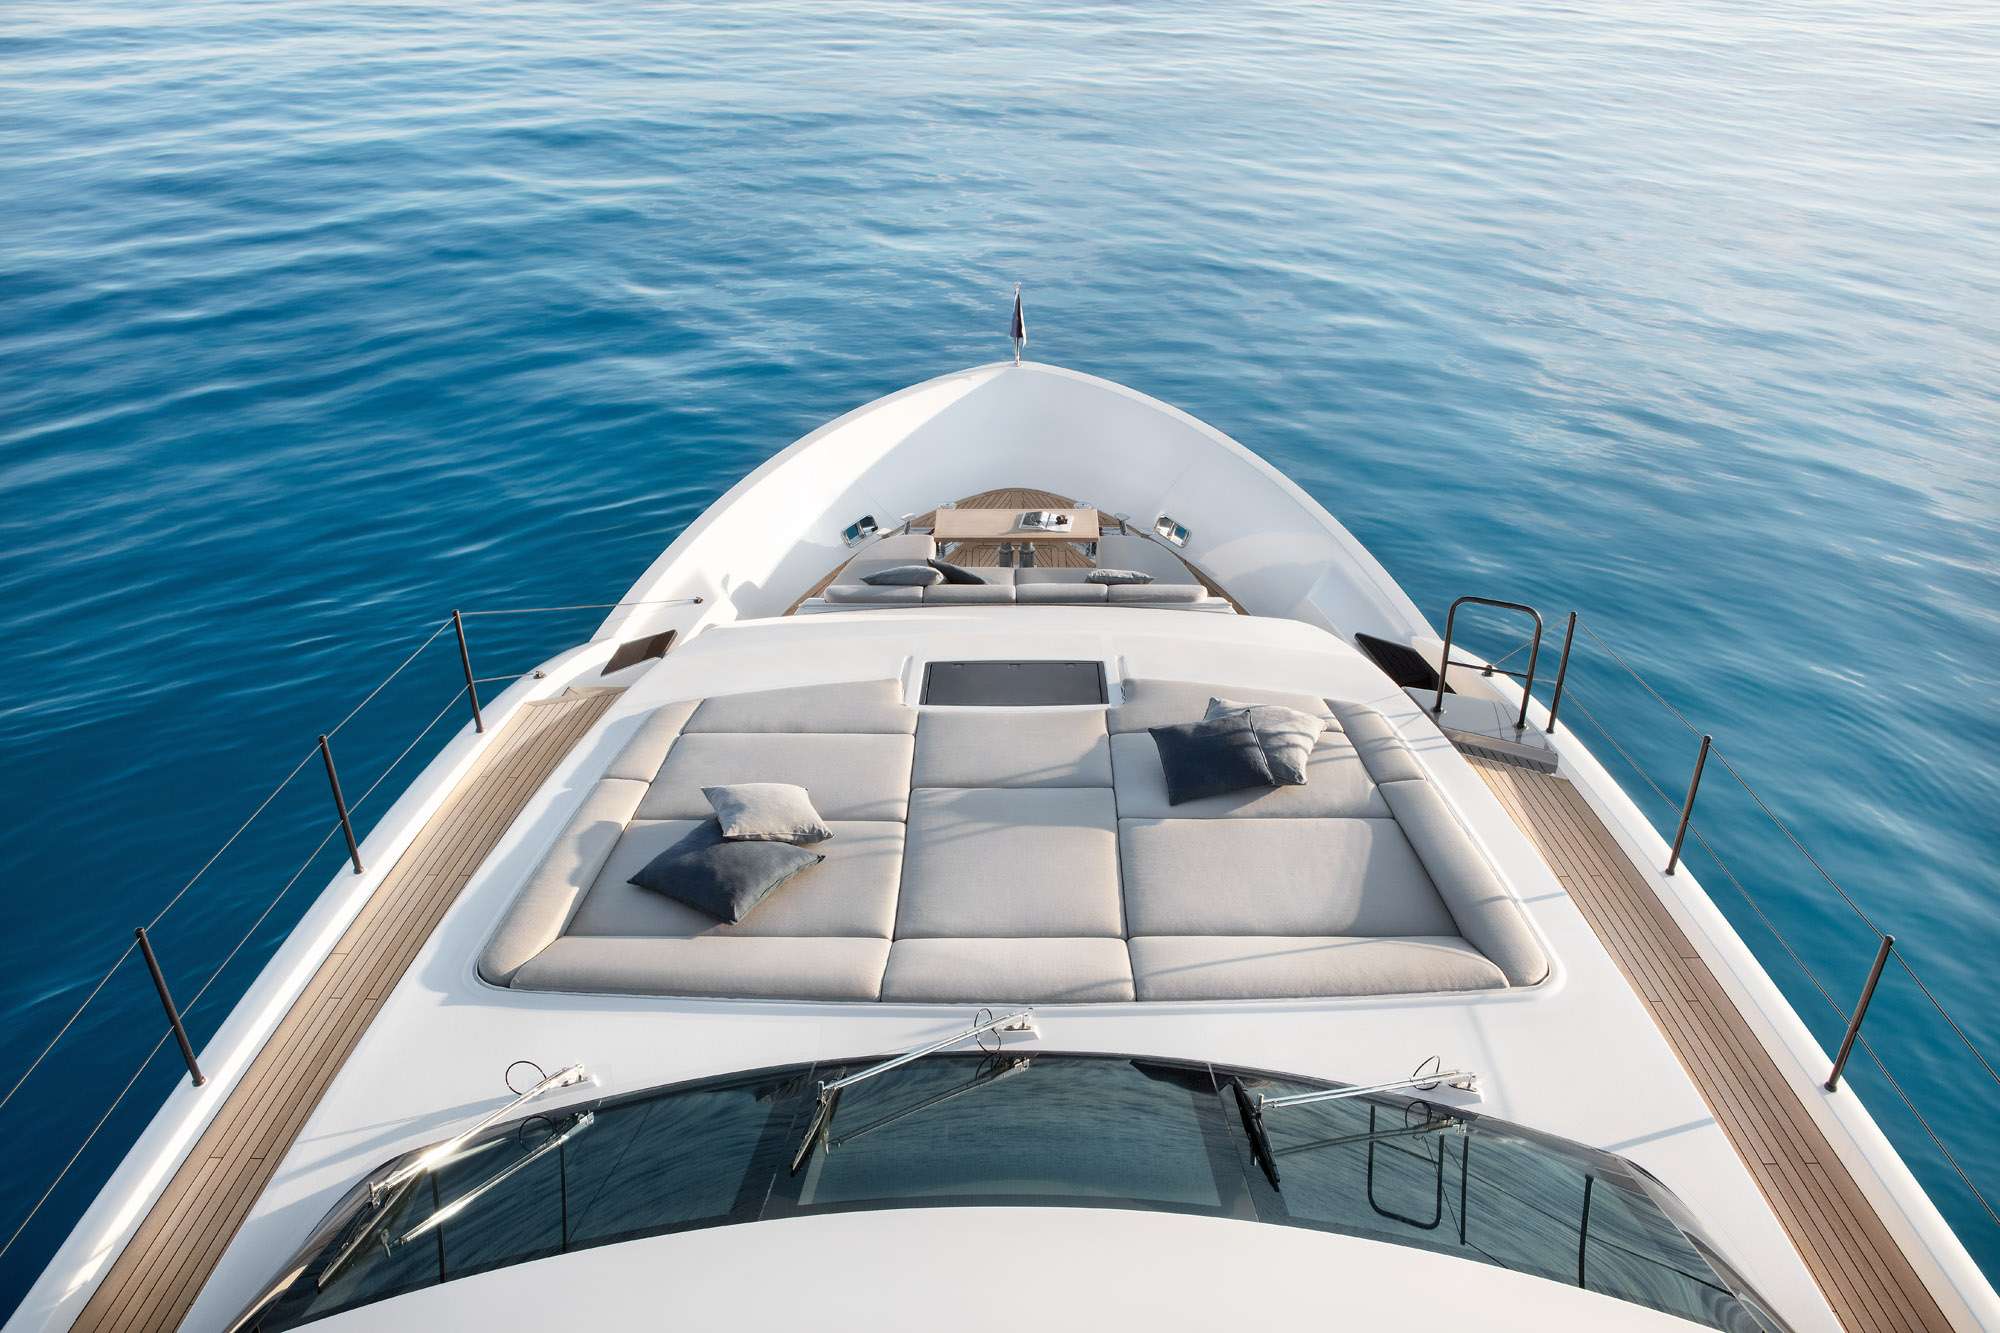 SEVEN - Yacht Charter Menorca & Boat hire in Balearics & Spain 6